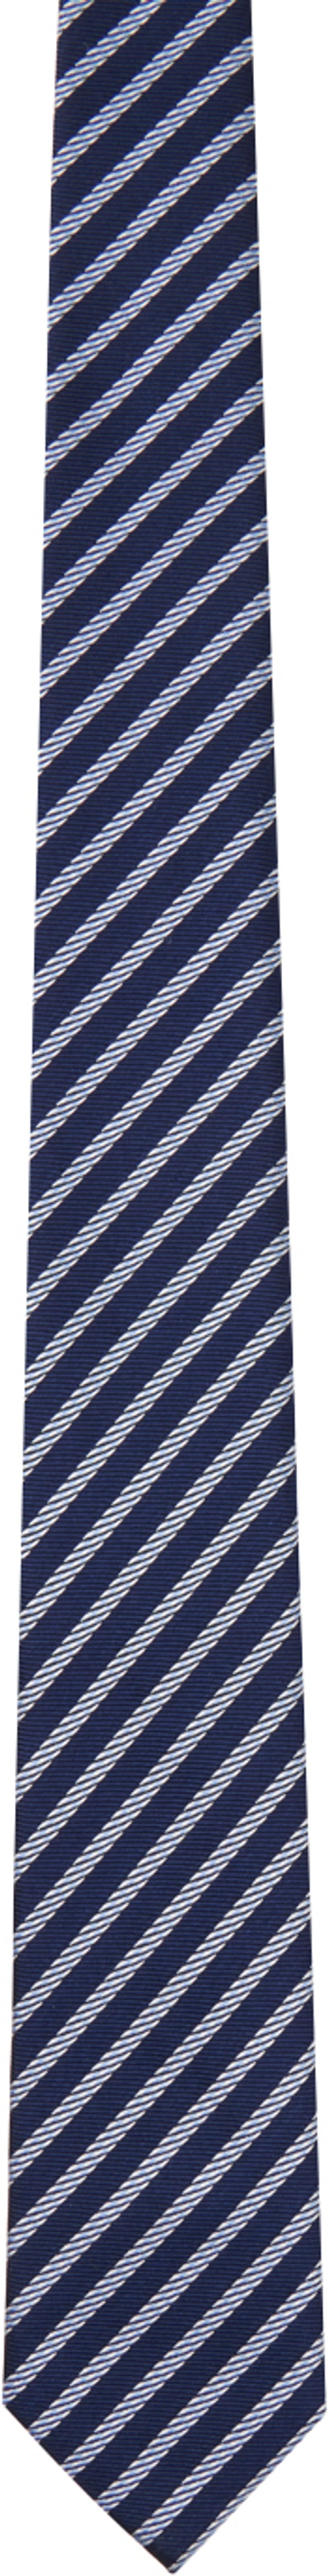 Zegna Navy Stripe Tie In Bl1